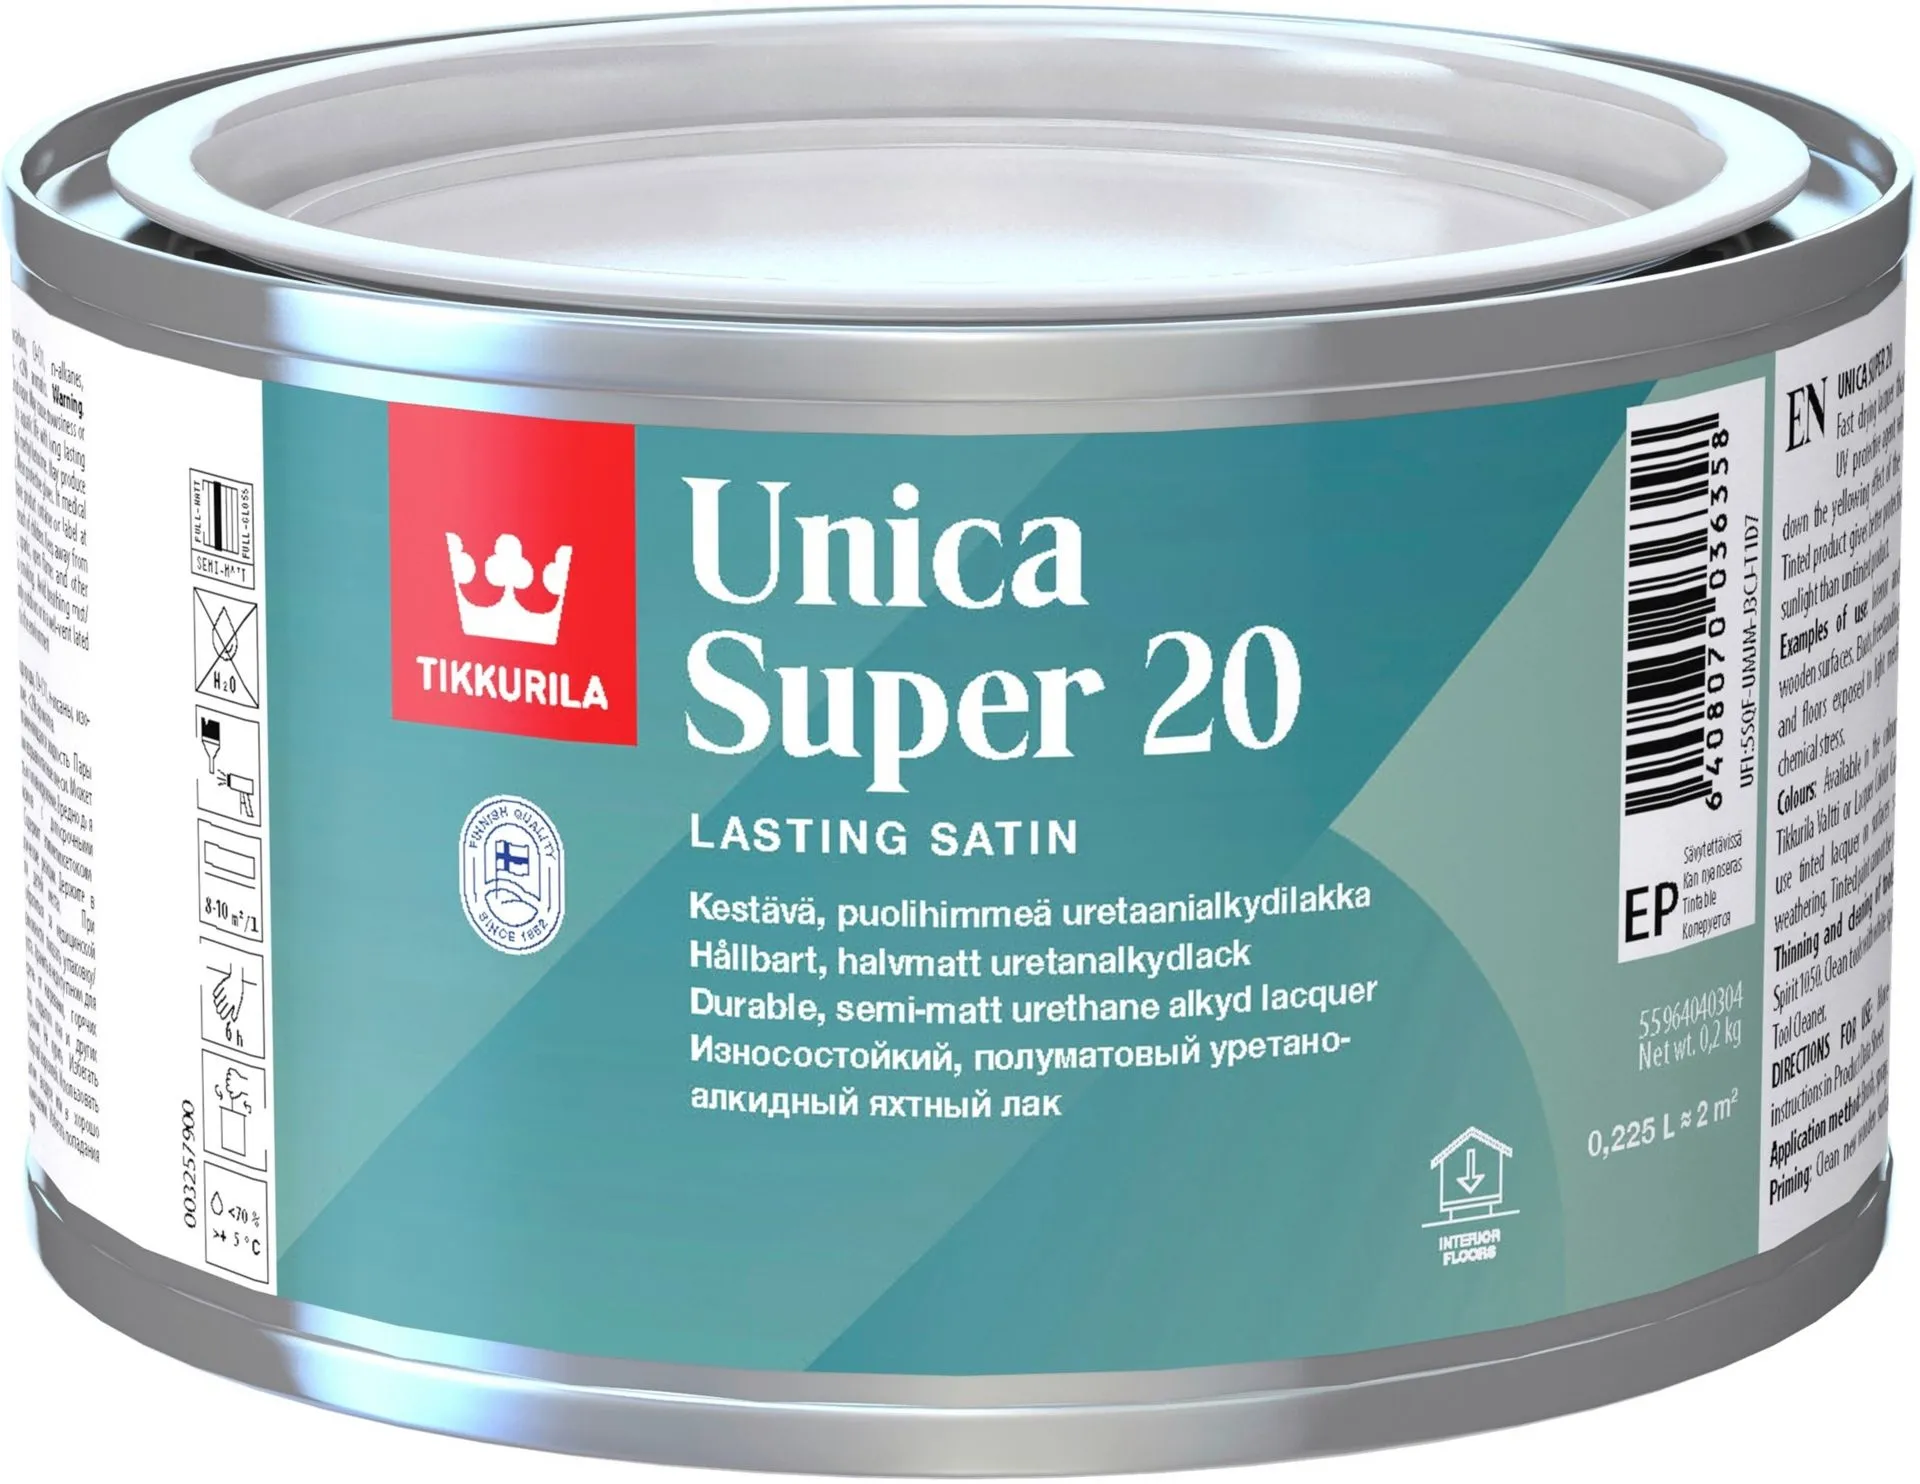 Tikkurila Unica Super 20 uretaanialkydilakka 0,225l sävytettävissä puolihimmeä